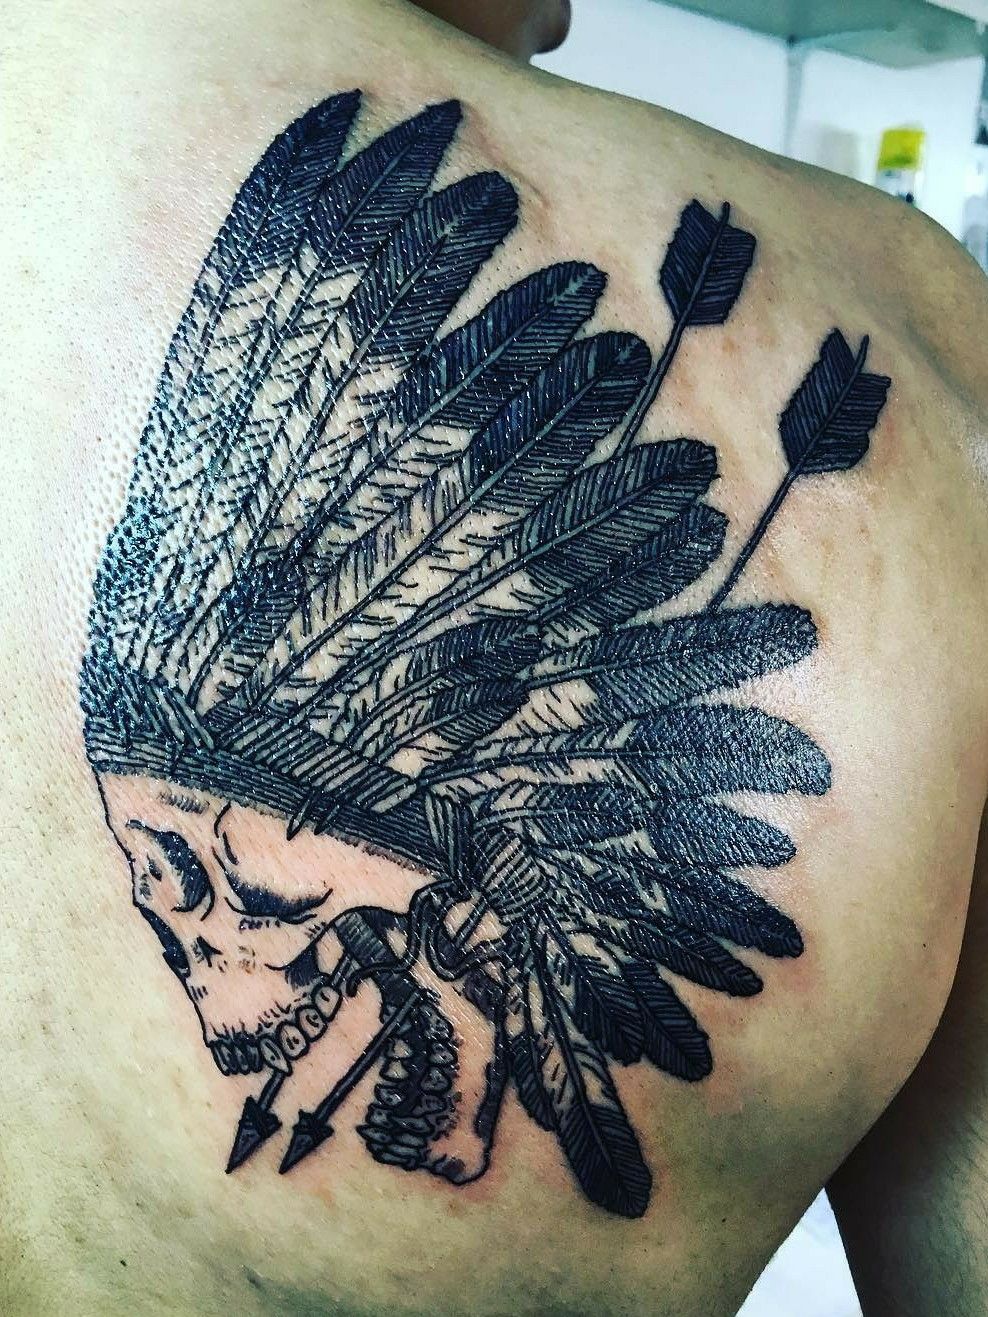 Tattoo uploaded by Oscarillo Serh • Padre nuestro en arameo y runas de  arcángeles dentro de una triqueta • Tattoodo